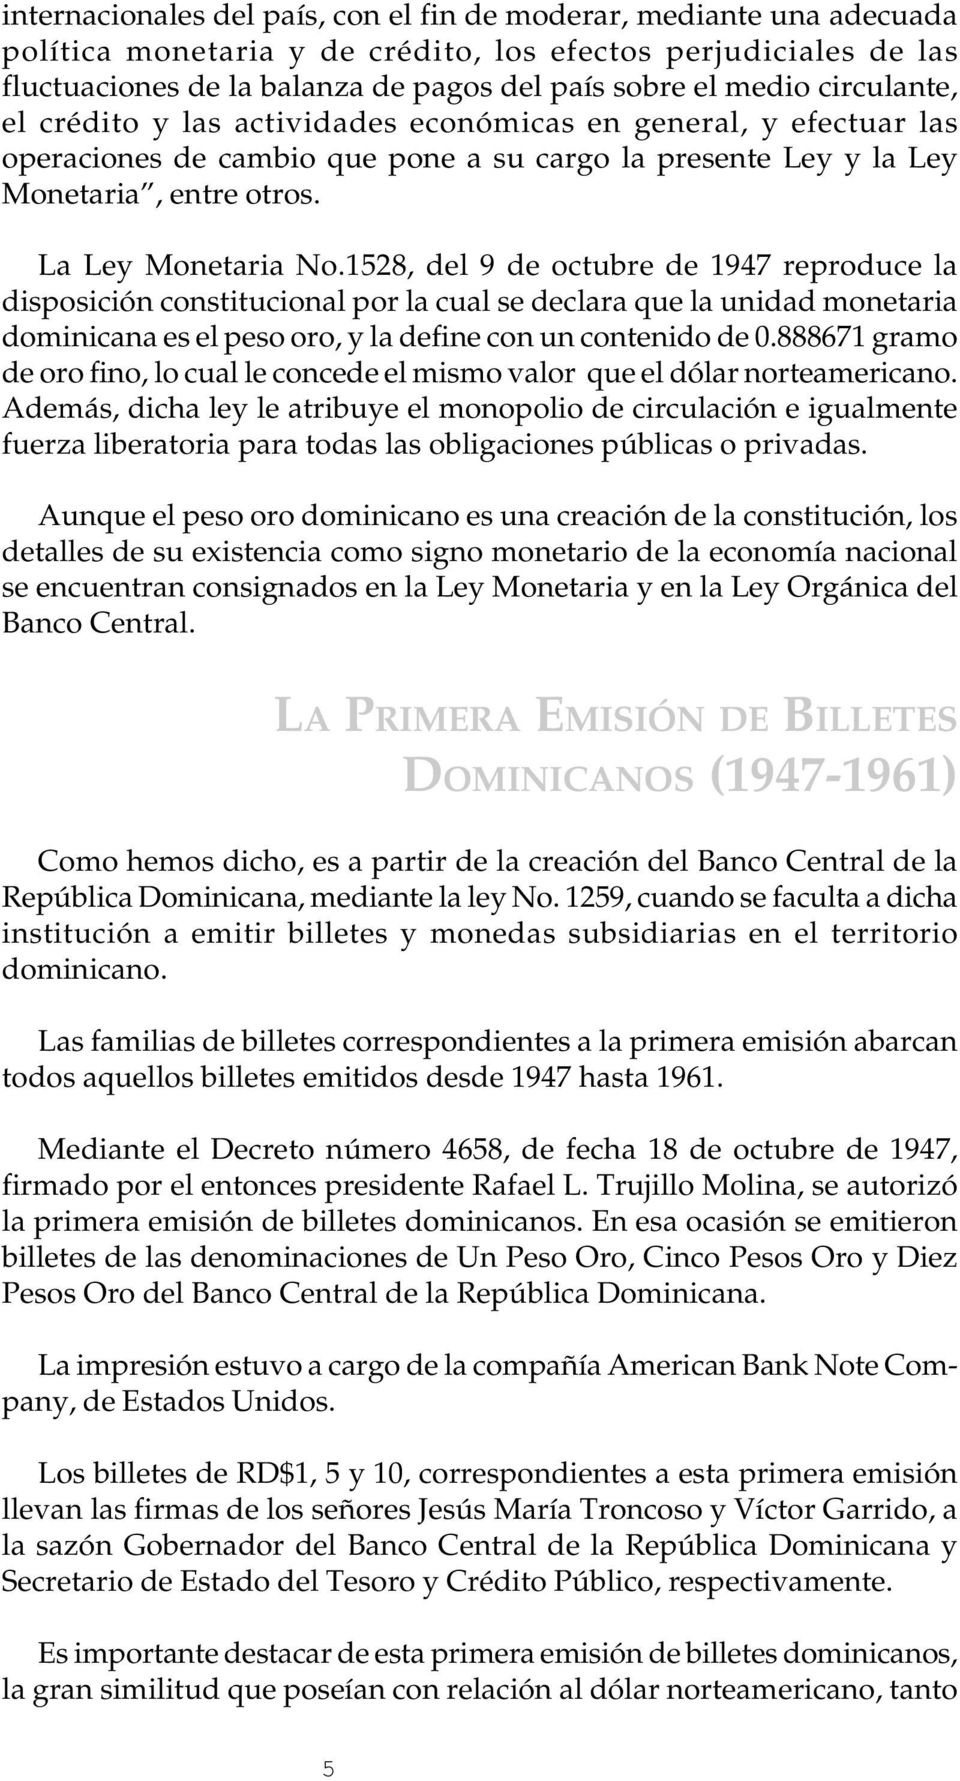 1528, del 9 de octubre de 1947 reproduce la disposición constitucional por la cual se declara que la unidad monetaria dominicana es el peso oro, y la define con un contenido de 0.